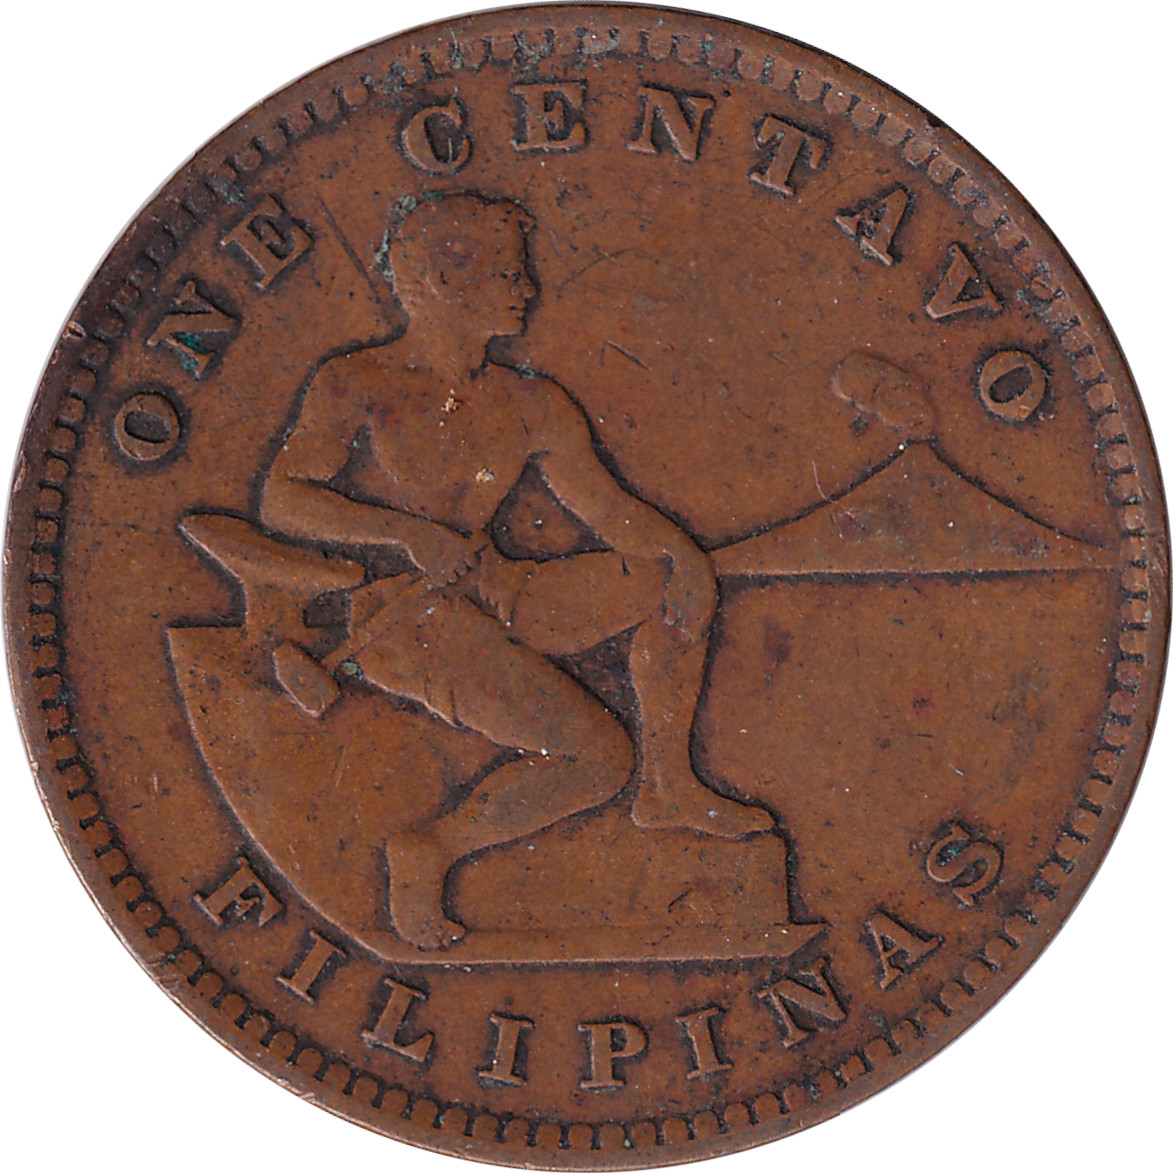 1 centavo - Emblème américain